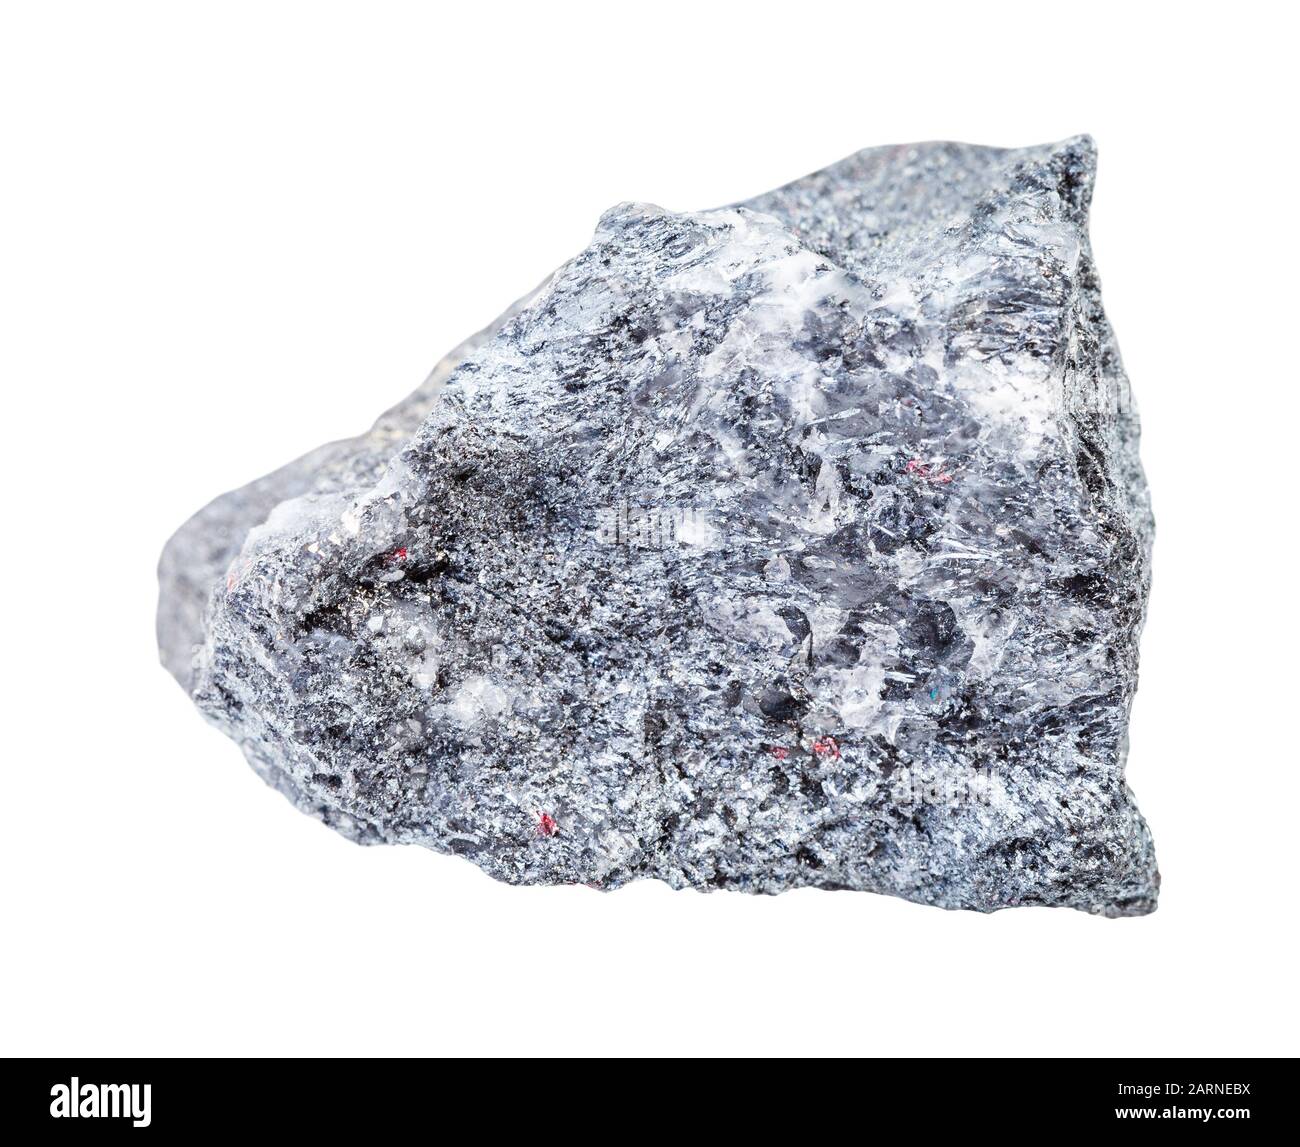 Closeup di campione di minerale naturale dalla raccolta geologica - Stibnite ruvida (Antimonite) minerale isolato su sfondo bianco Foto Stock